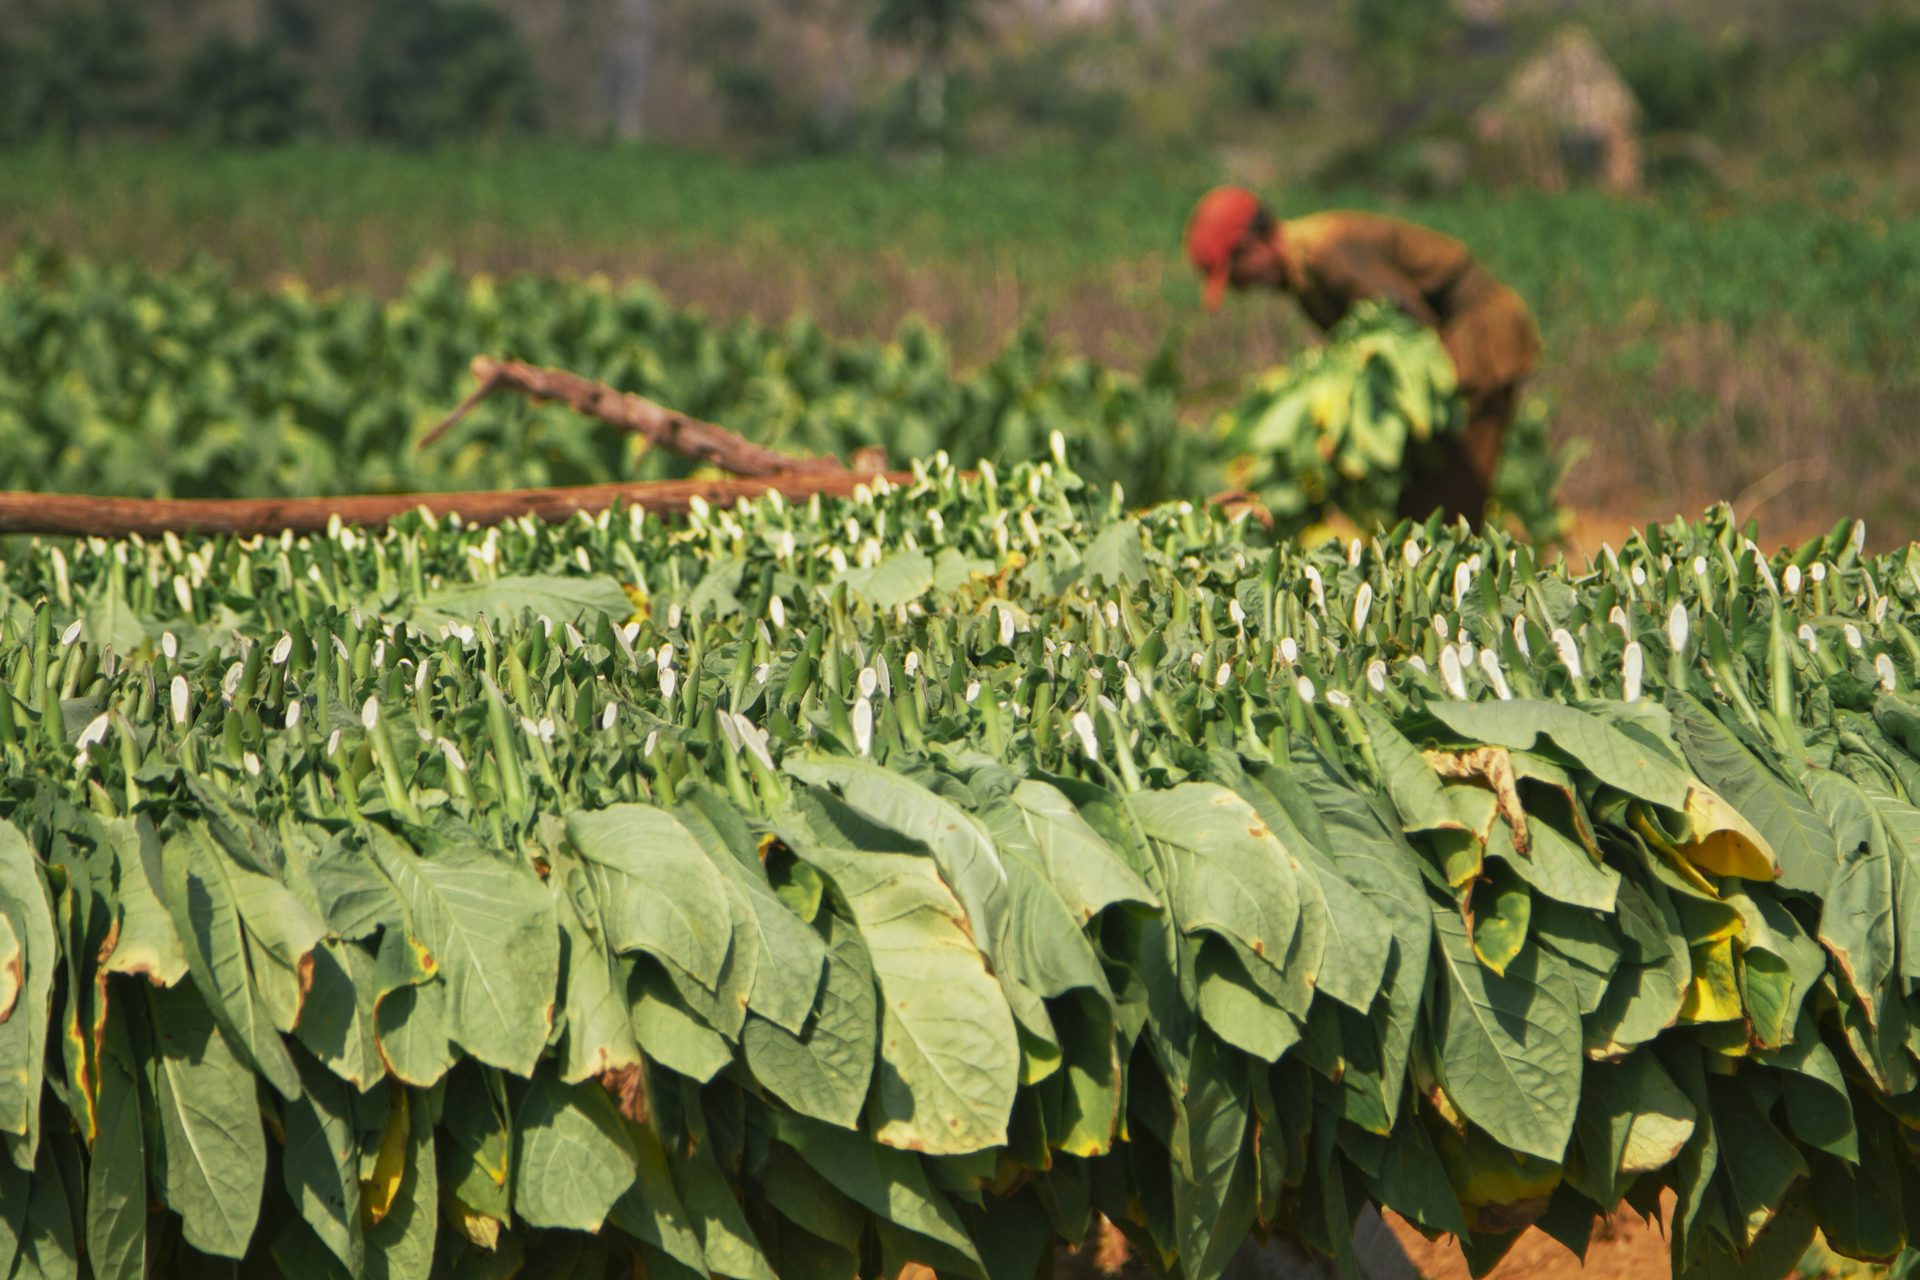 A person tobacco farming in a tobacco field